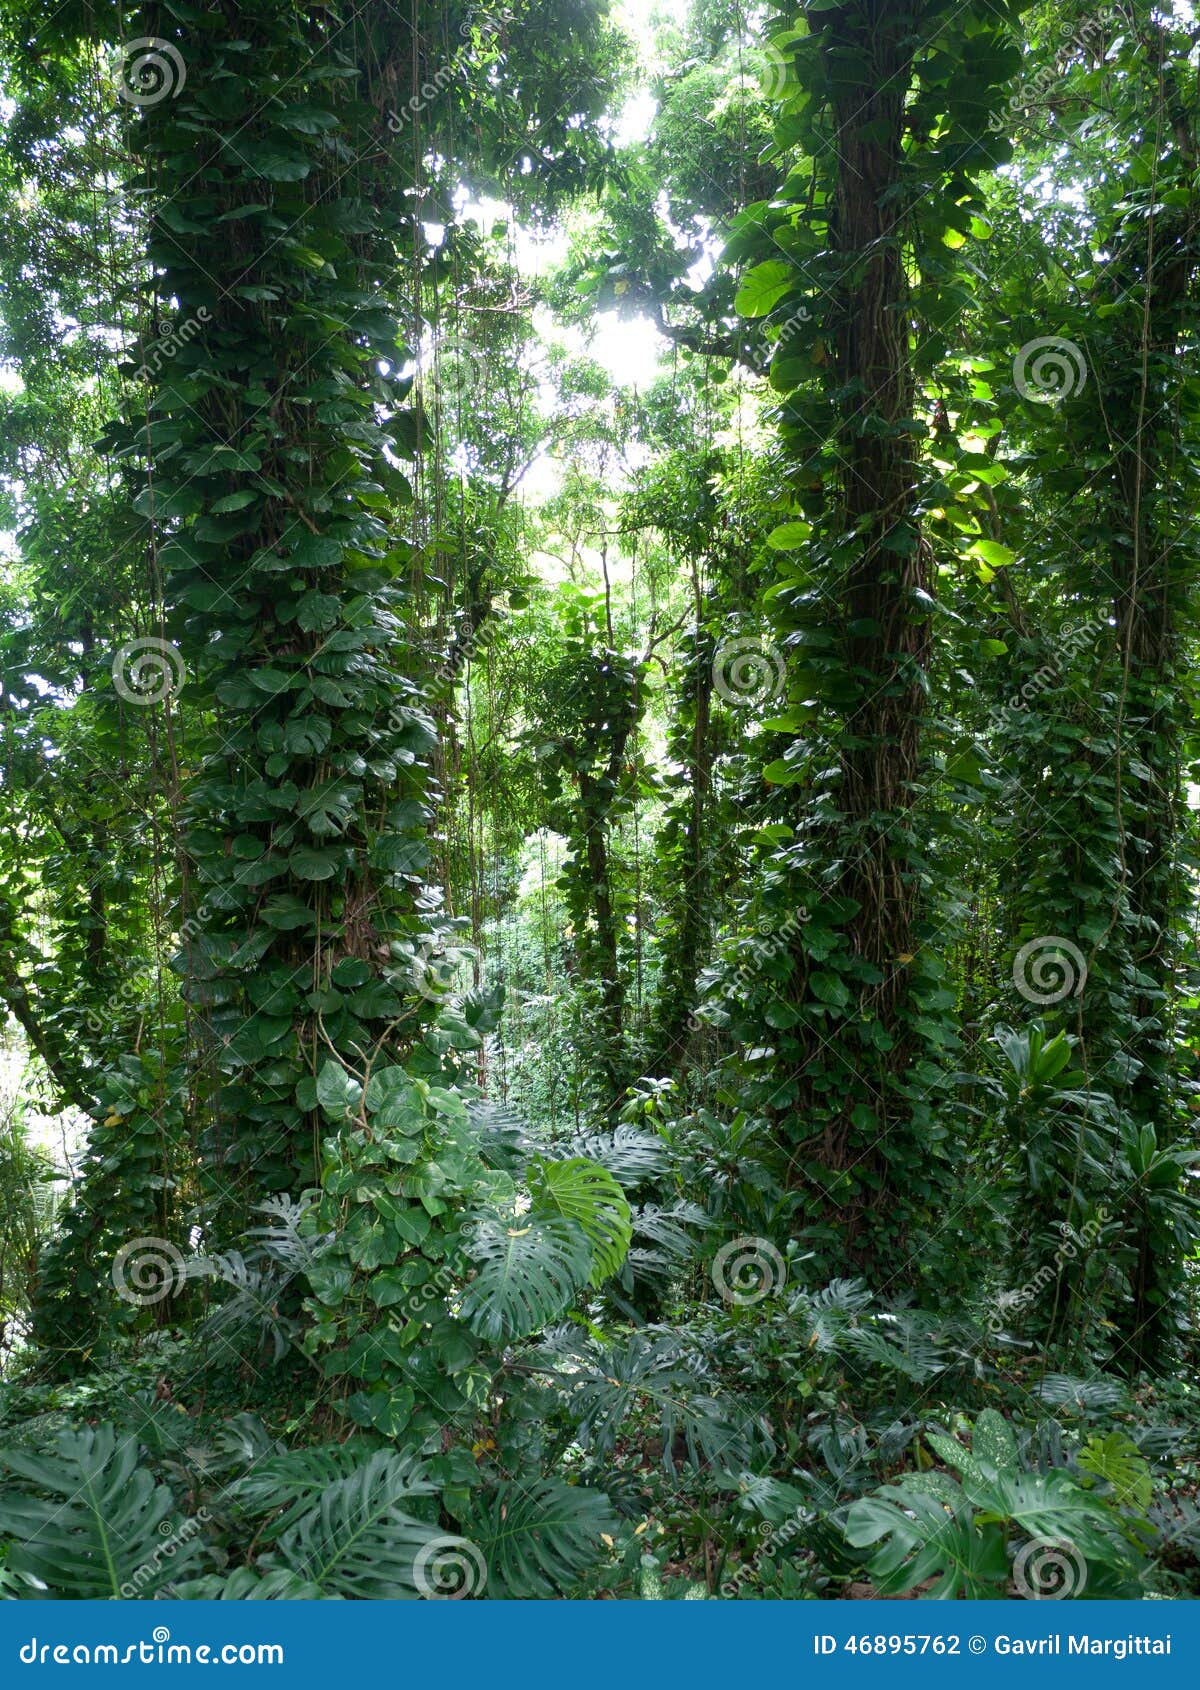 lush jungle like vegetation maui hawaii